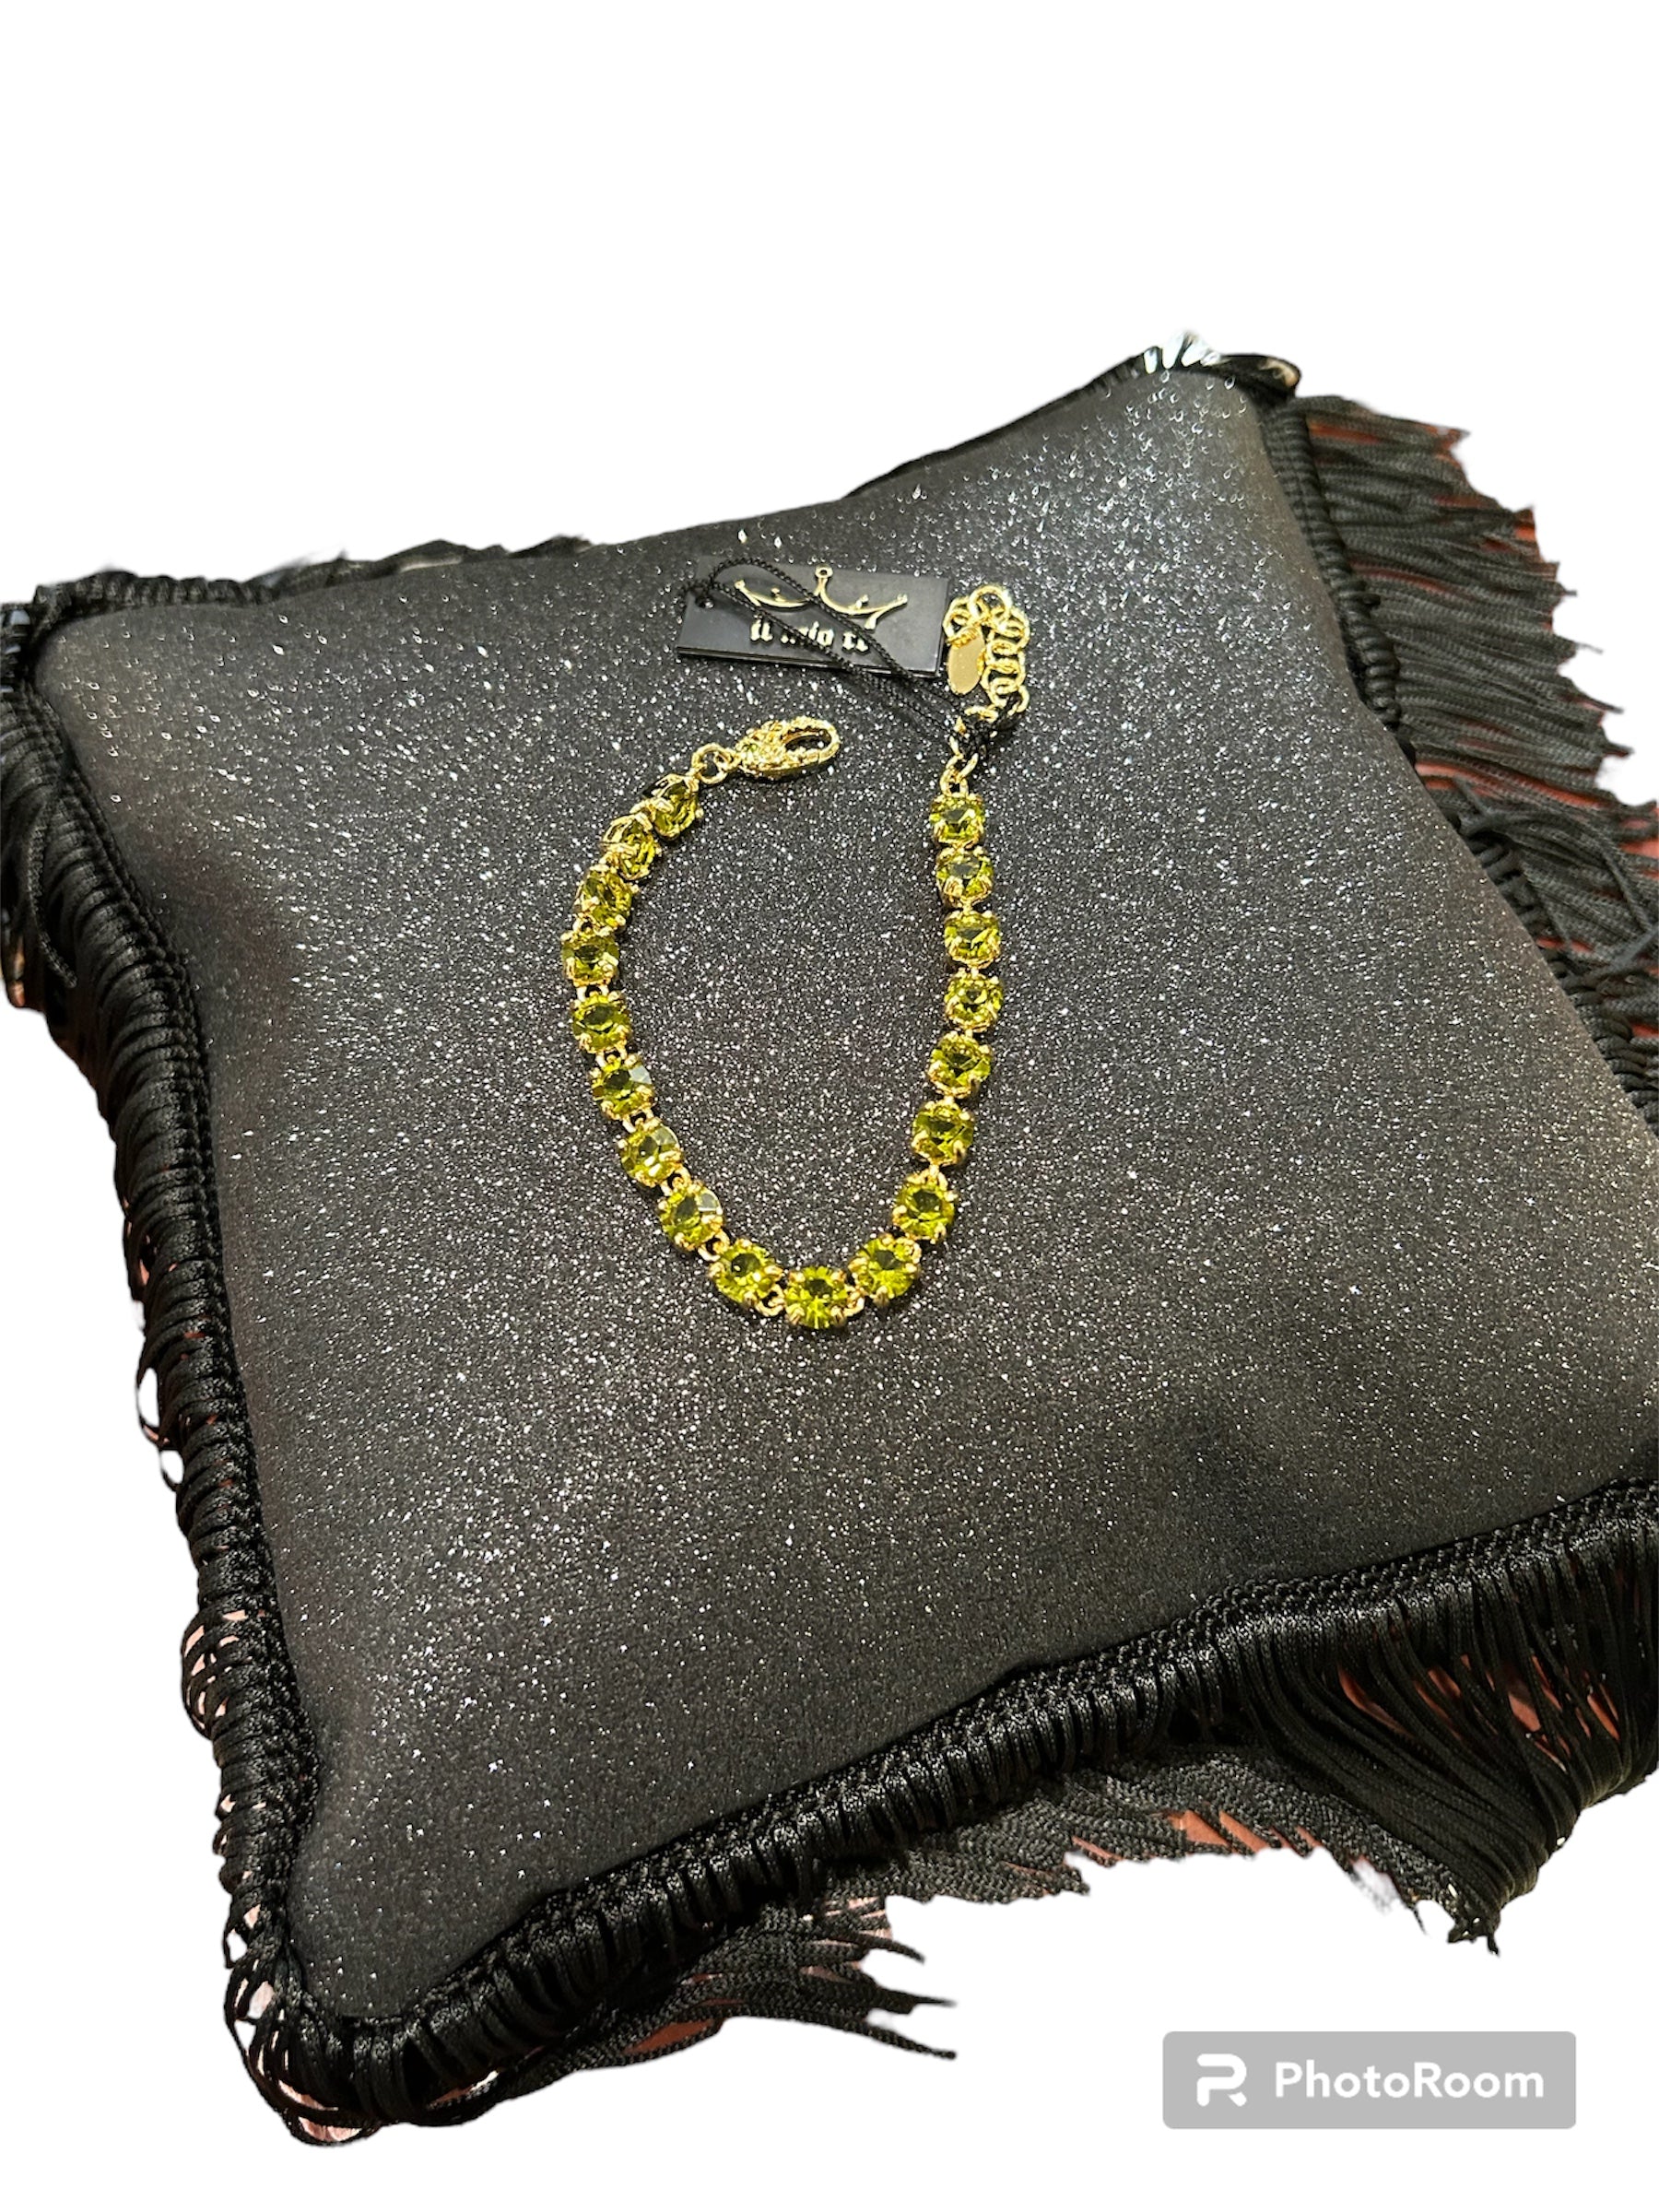 IL Mio Re - Bracelet avec pierres péridots verts en bronze doré - ILMIORE BR 020 GV